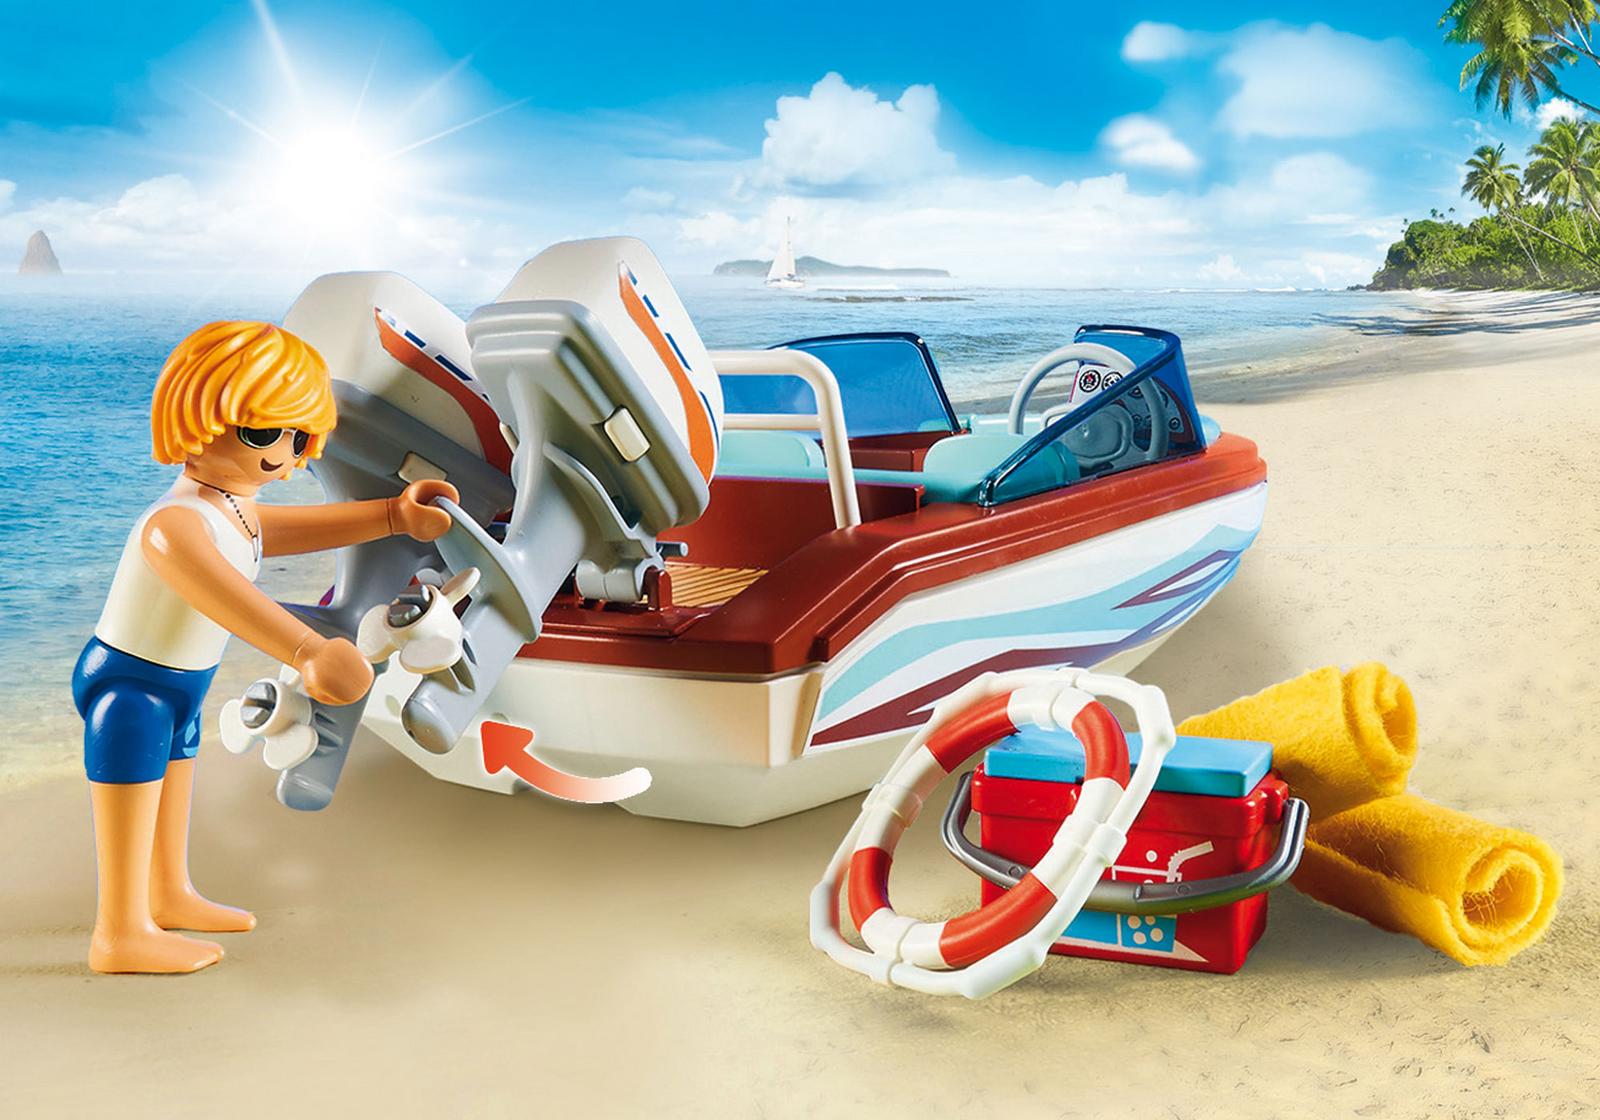 Barca de viteza cu motor playmobil family fun - 2